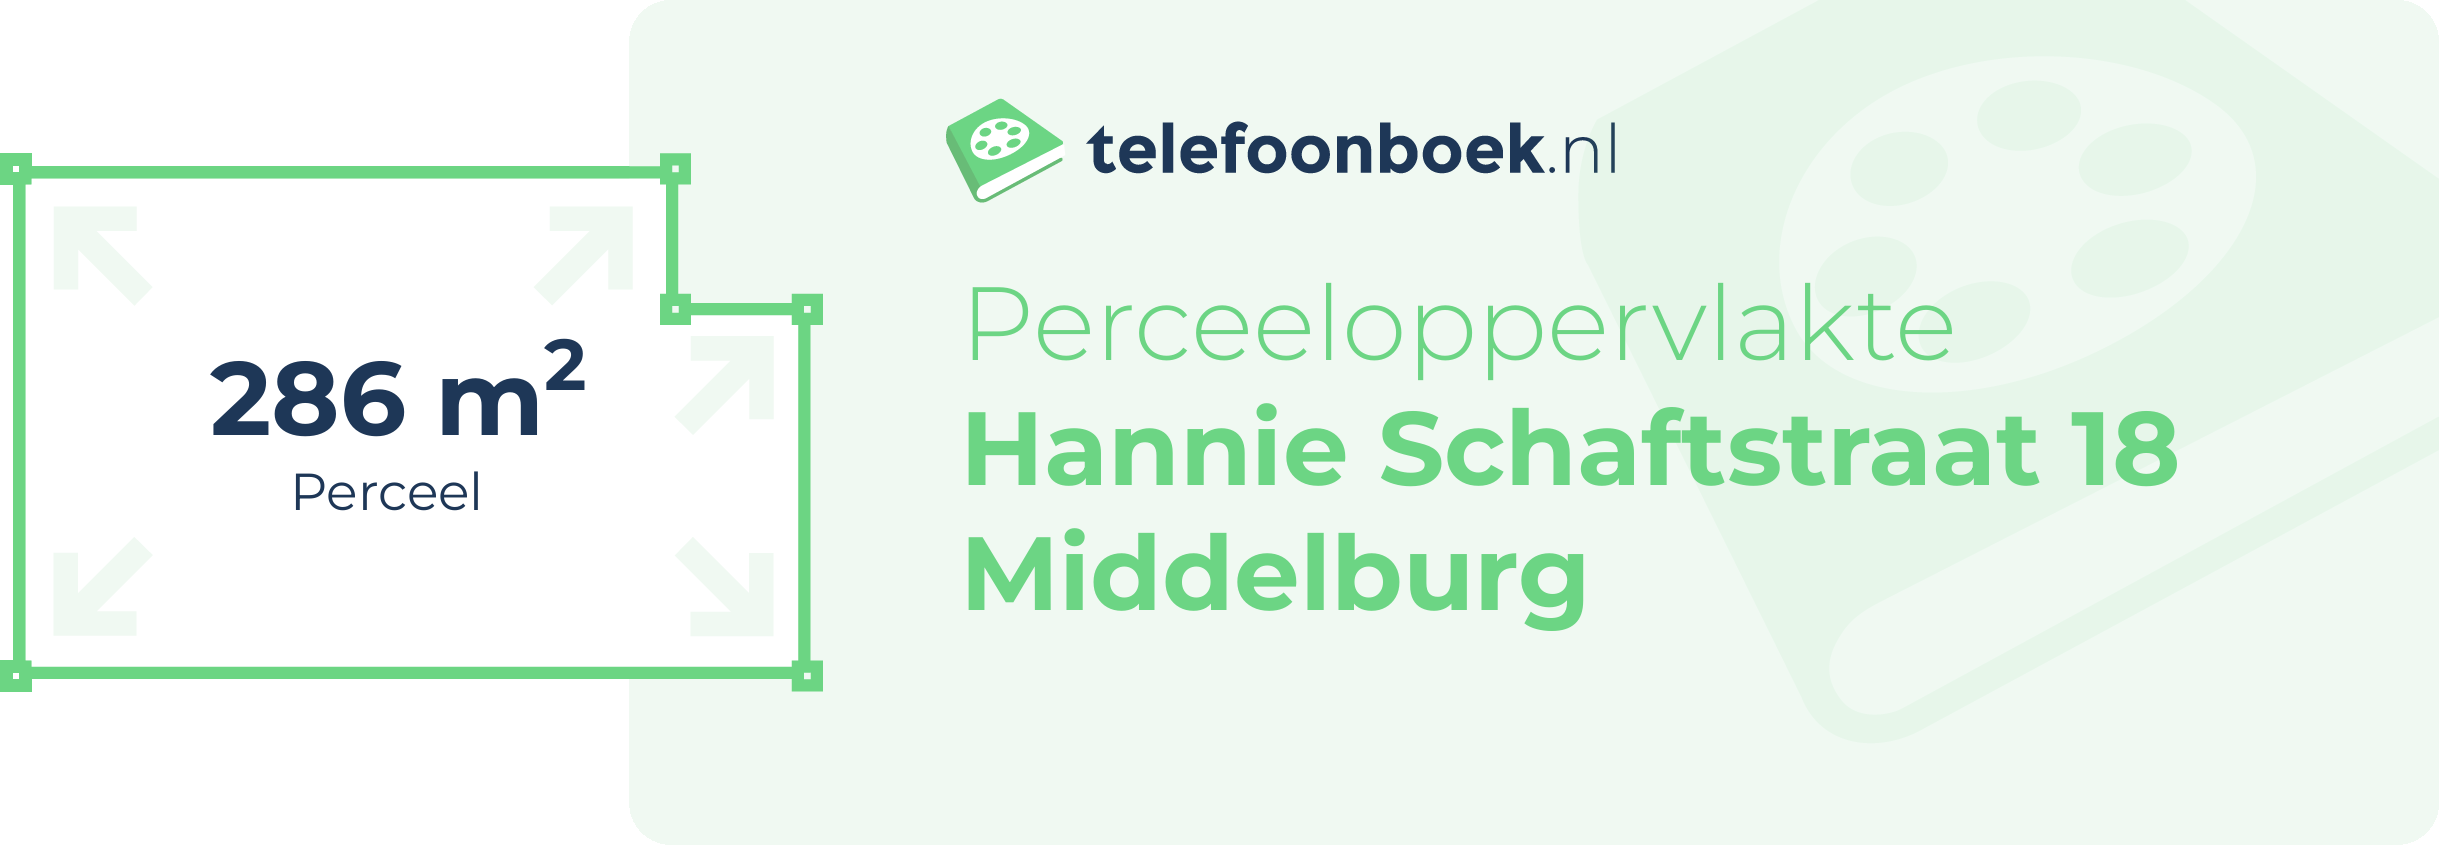 Perceeloppervlakte Hannie Schaftstraat 18 Middelburg